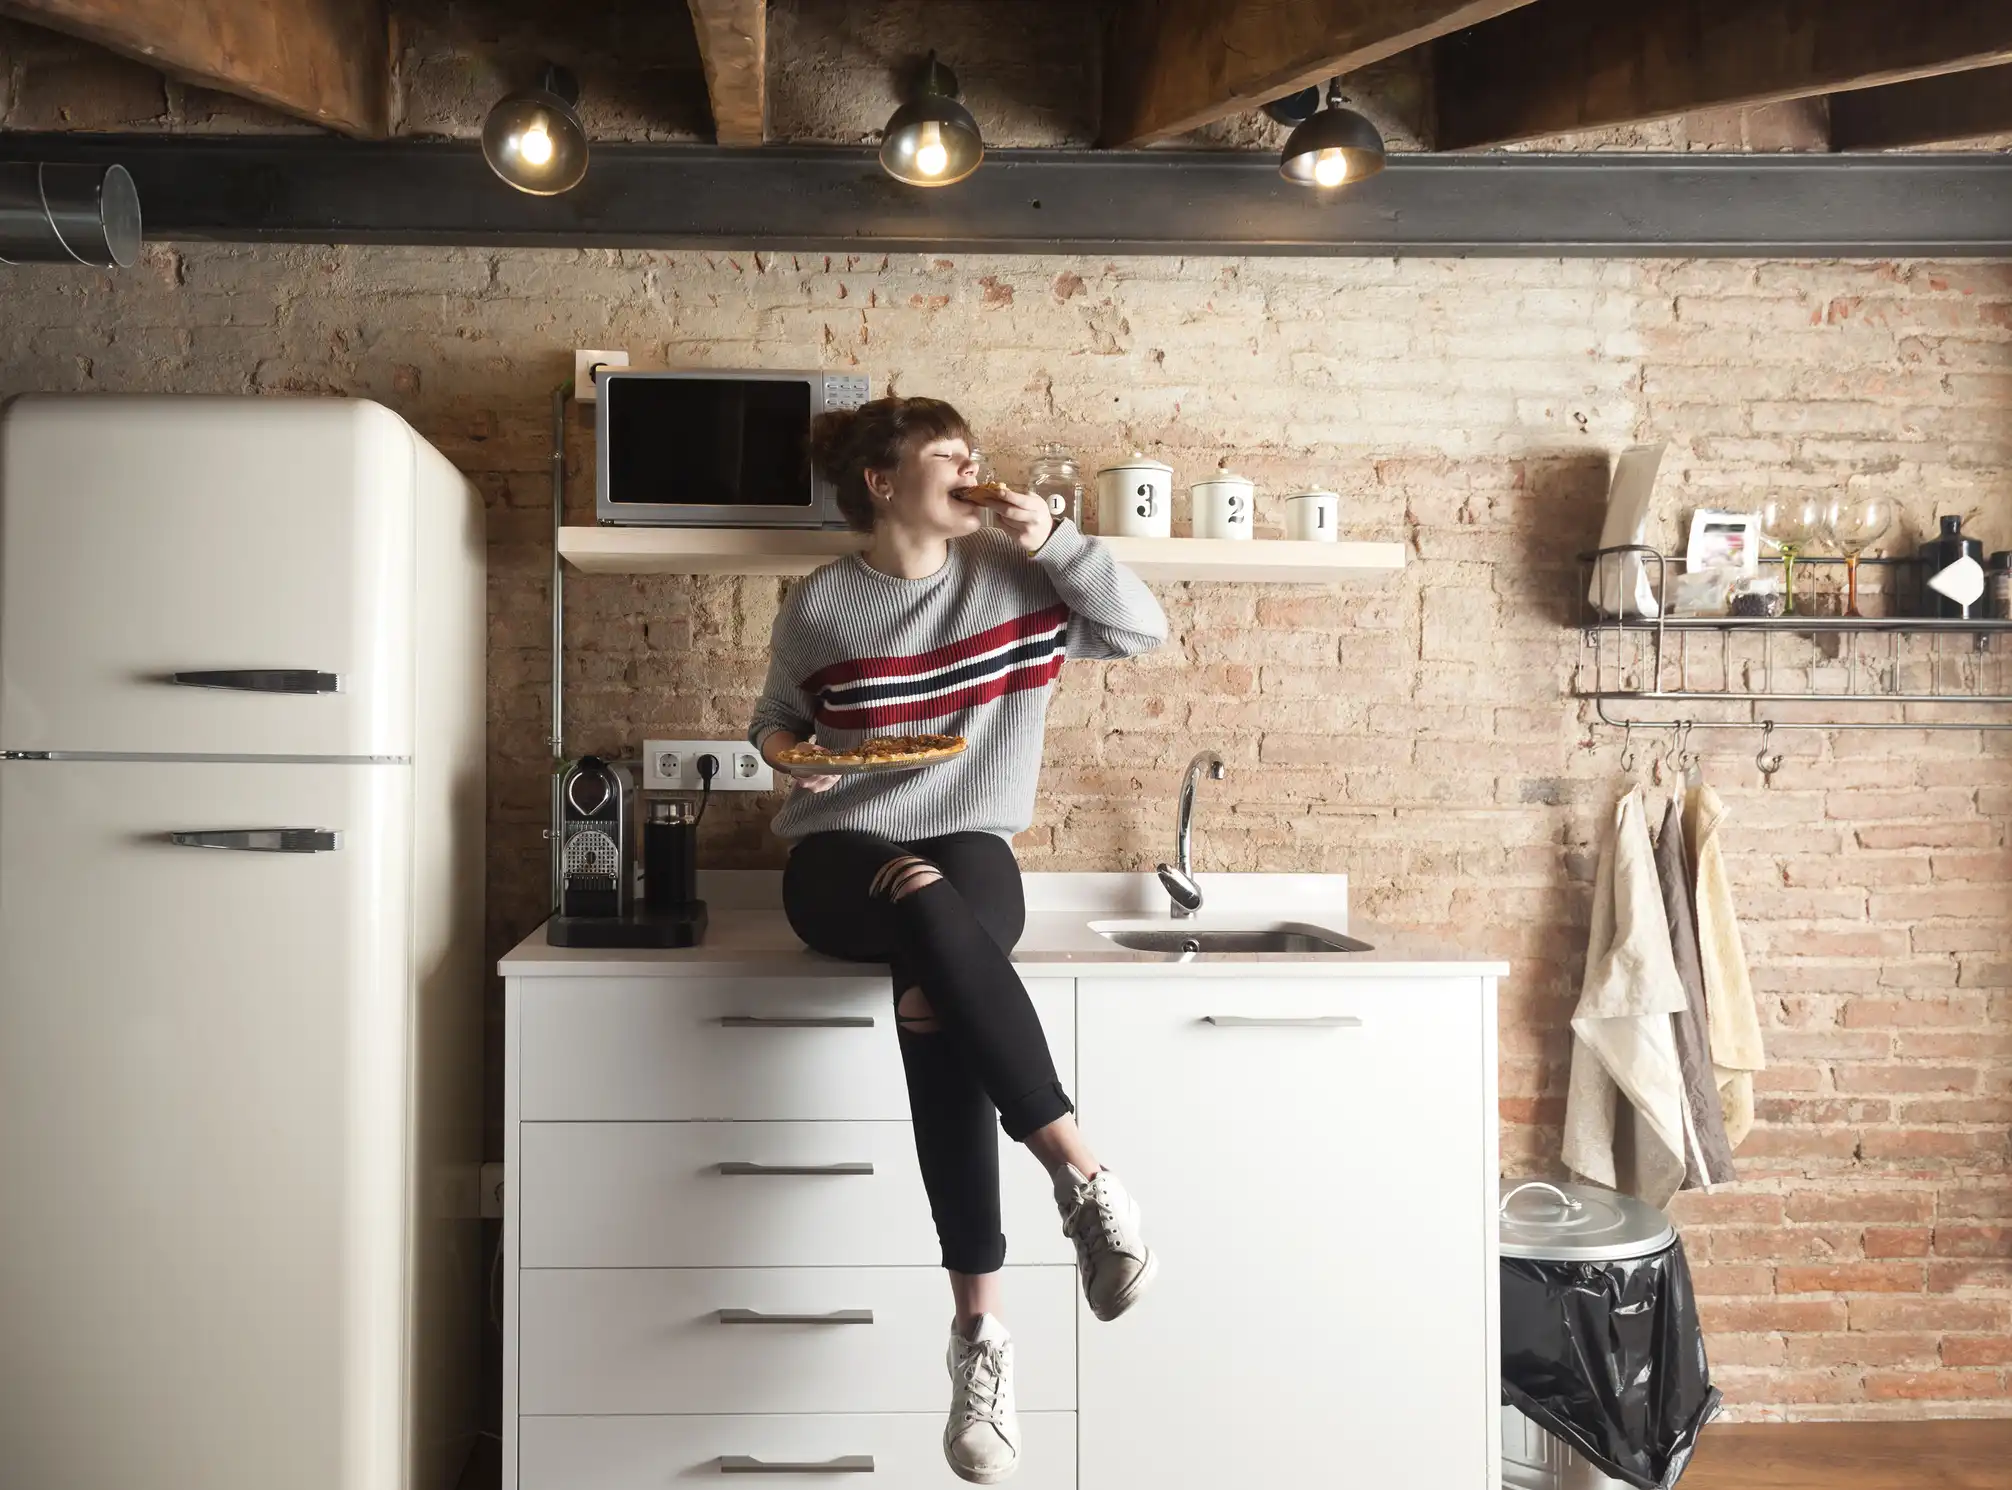 Bild junge Frau in Küche